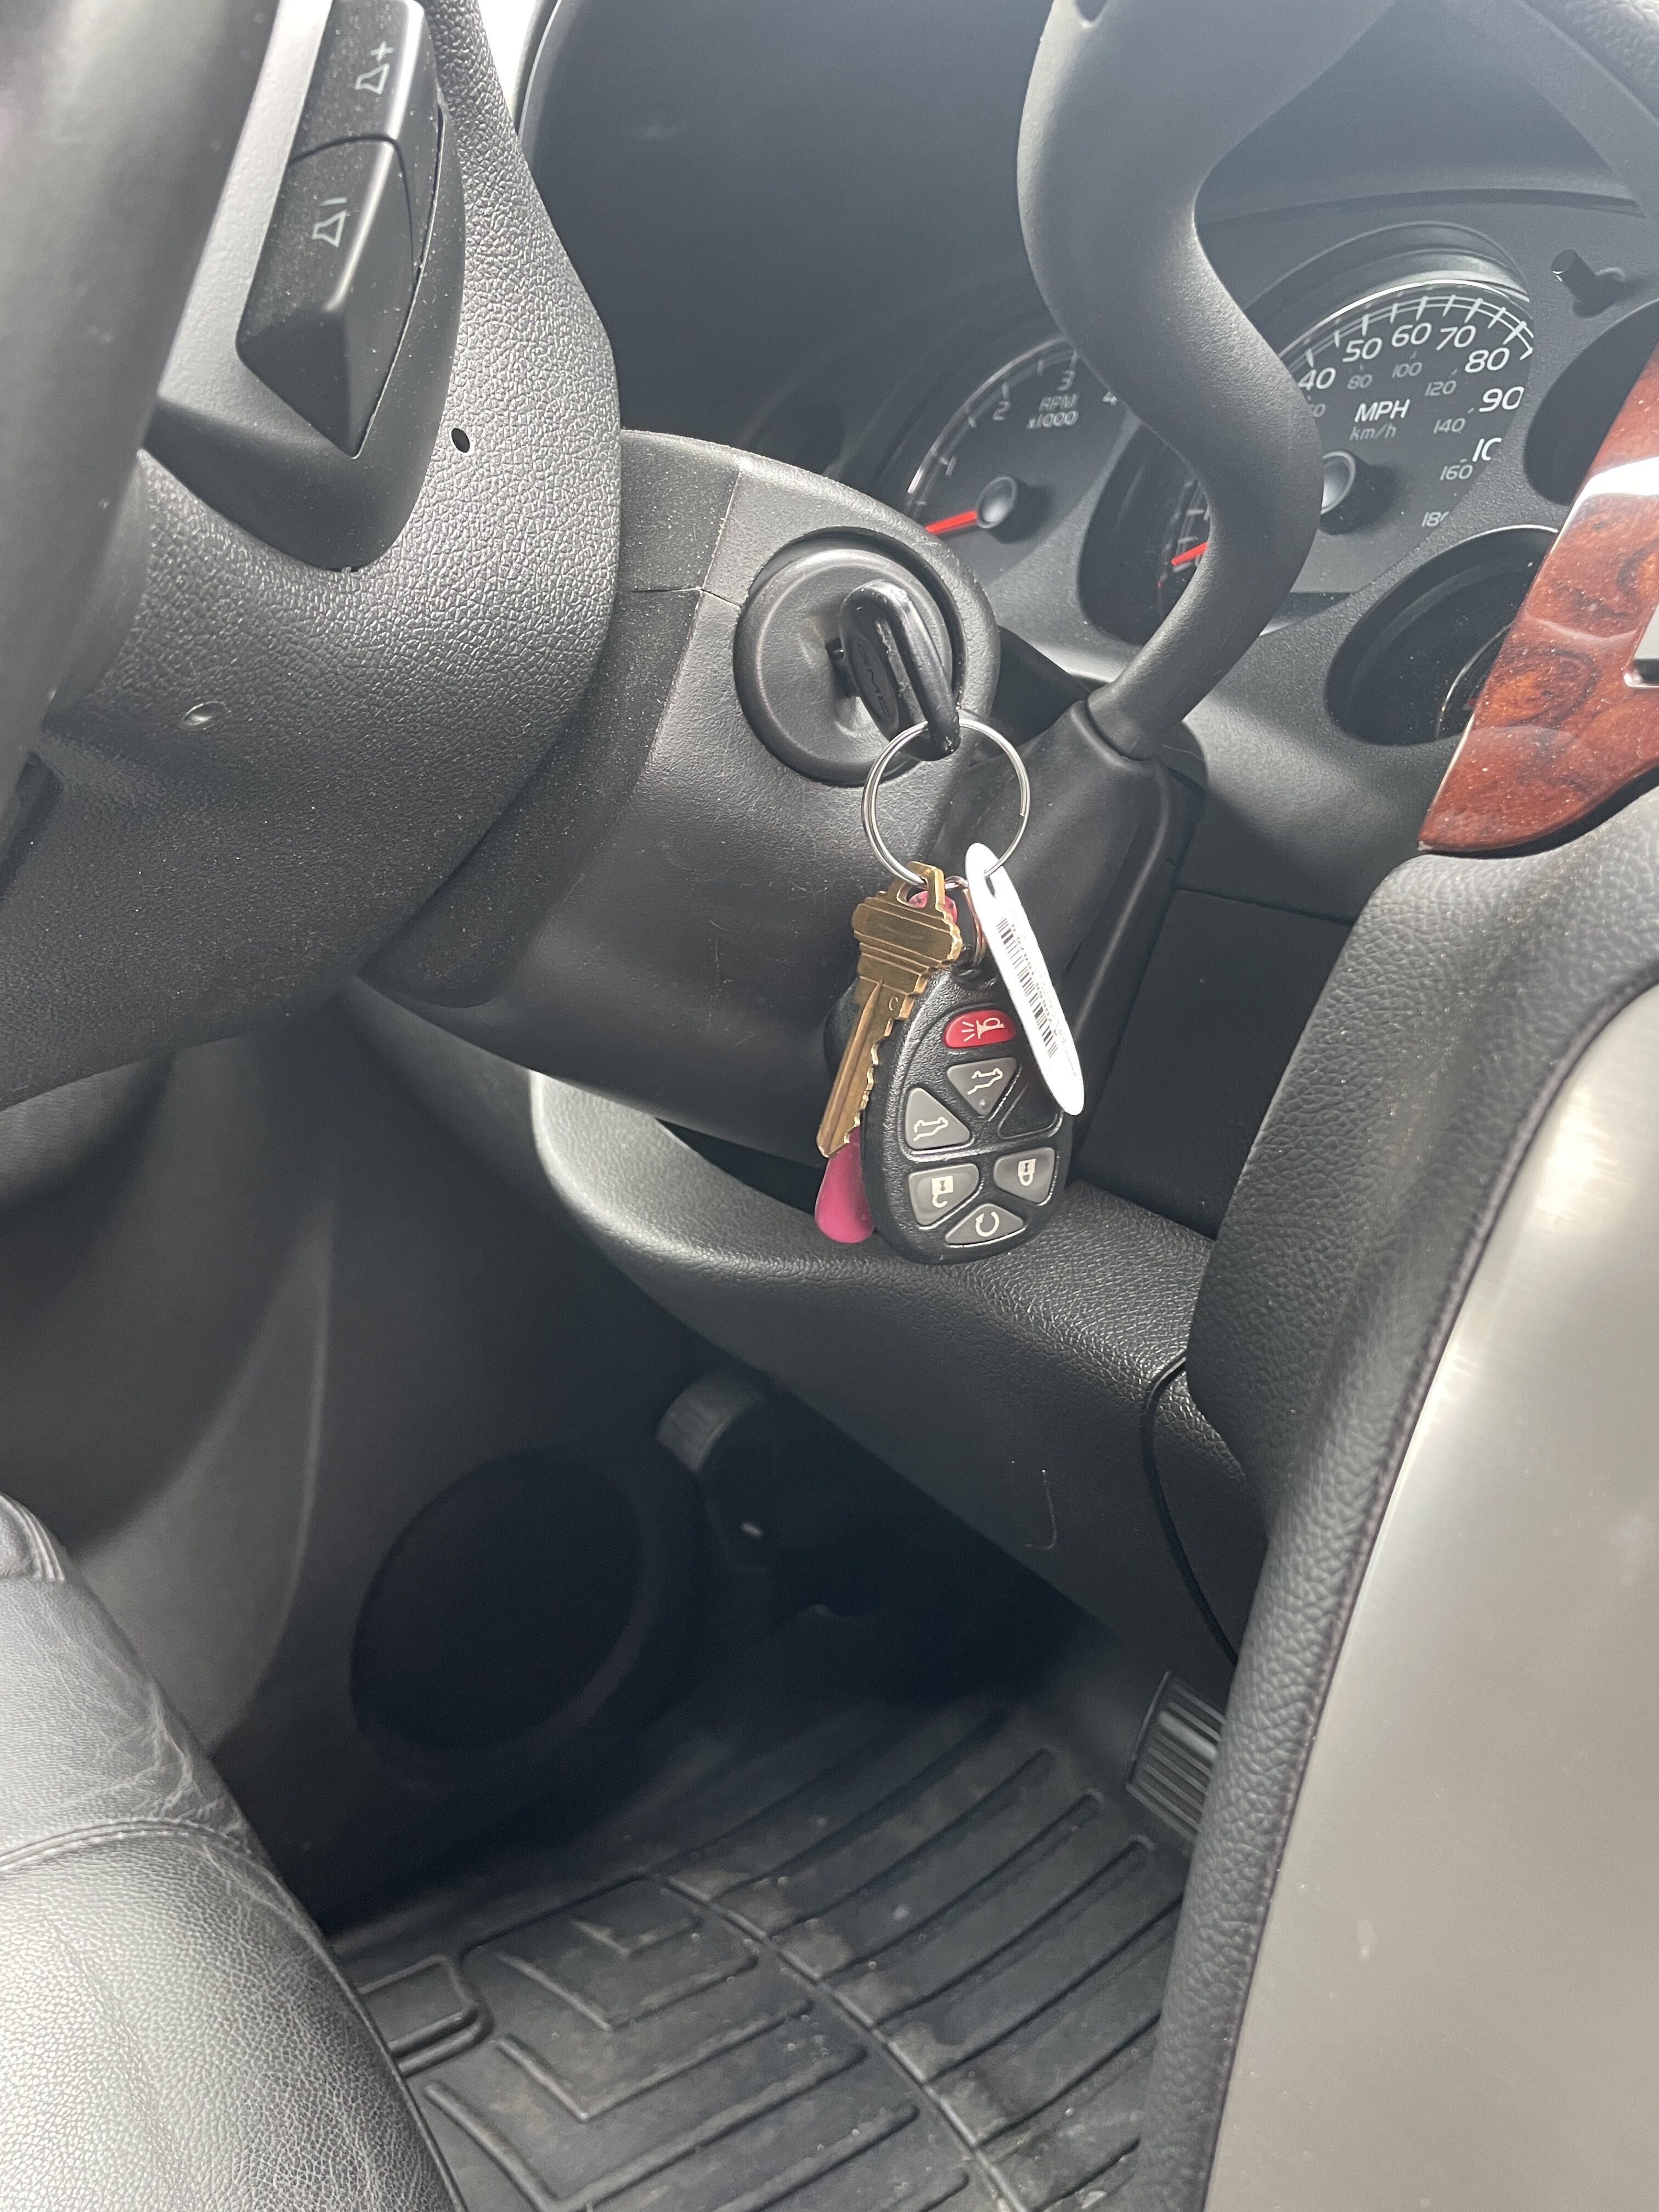 Why won’t my car keys turn?